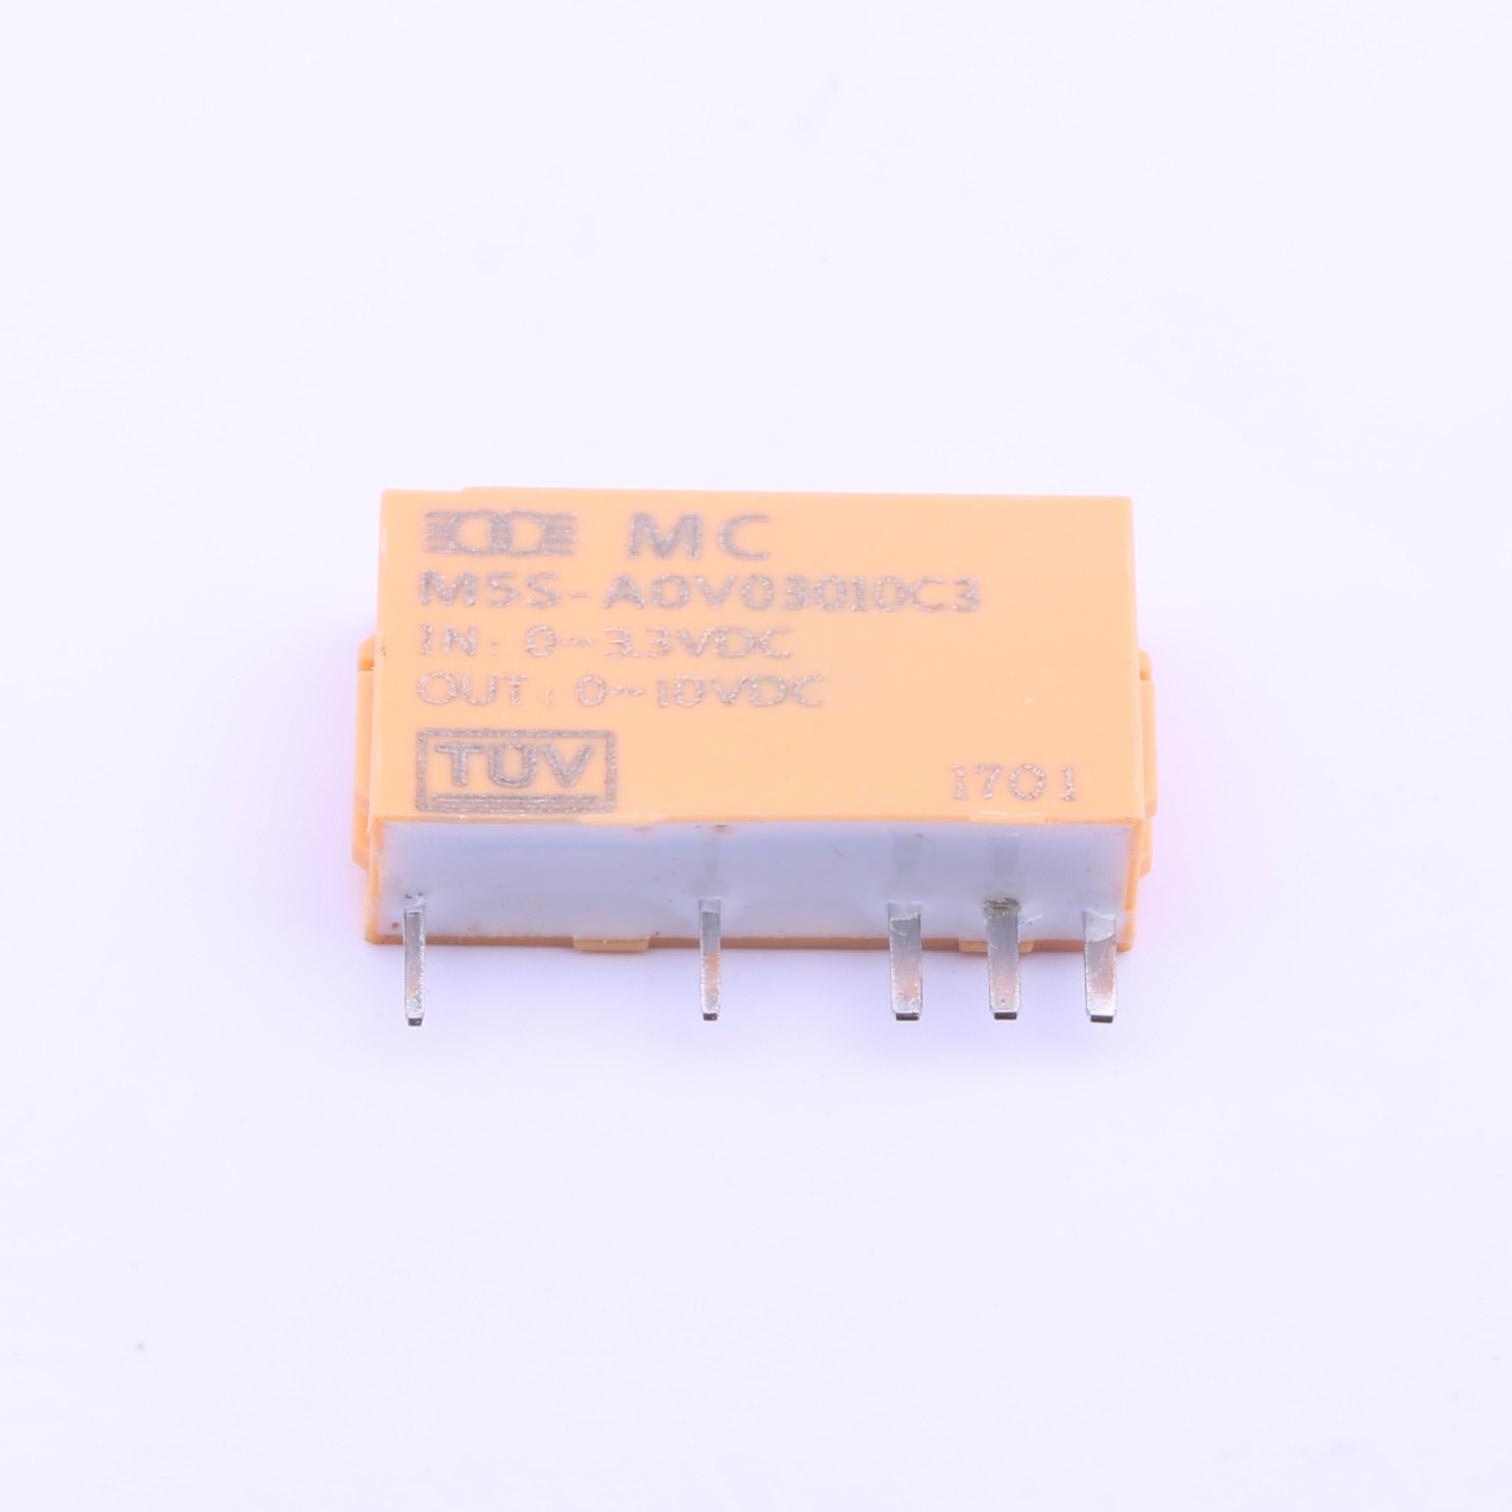 M5S-AOV03010C3_未分类